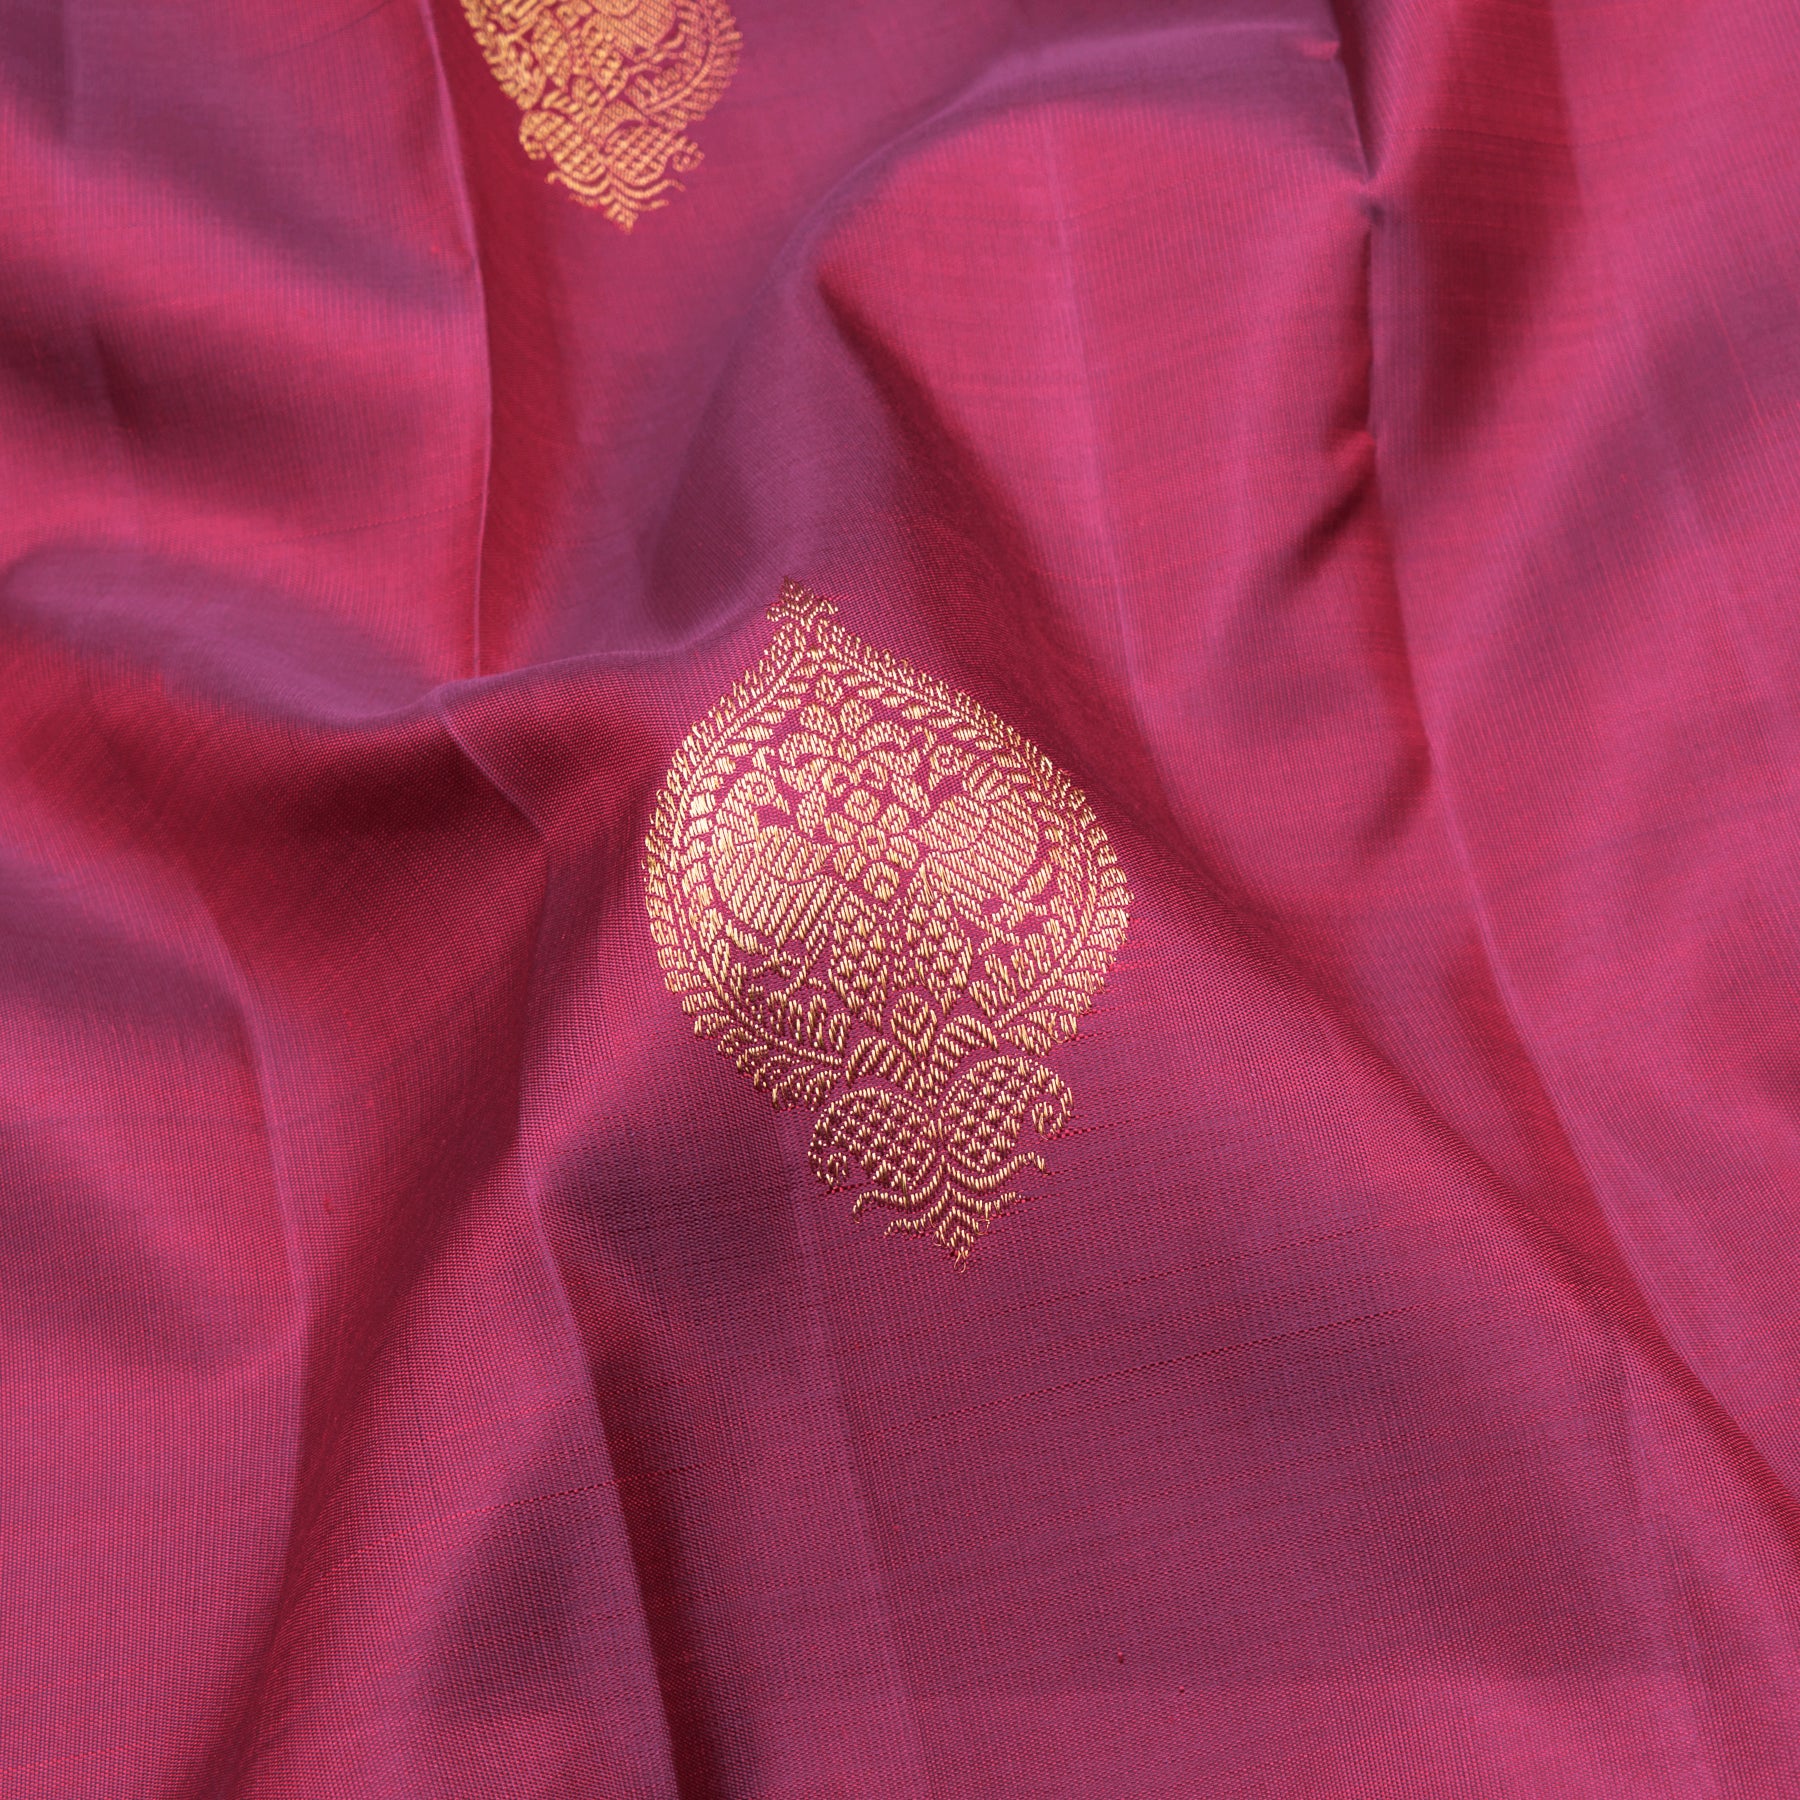 Kanakavalli Kanjivaram Silk Sari 23-595-HS001-12702 - Fabric View